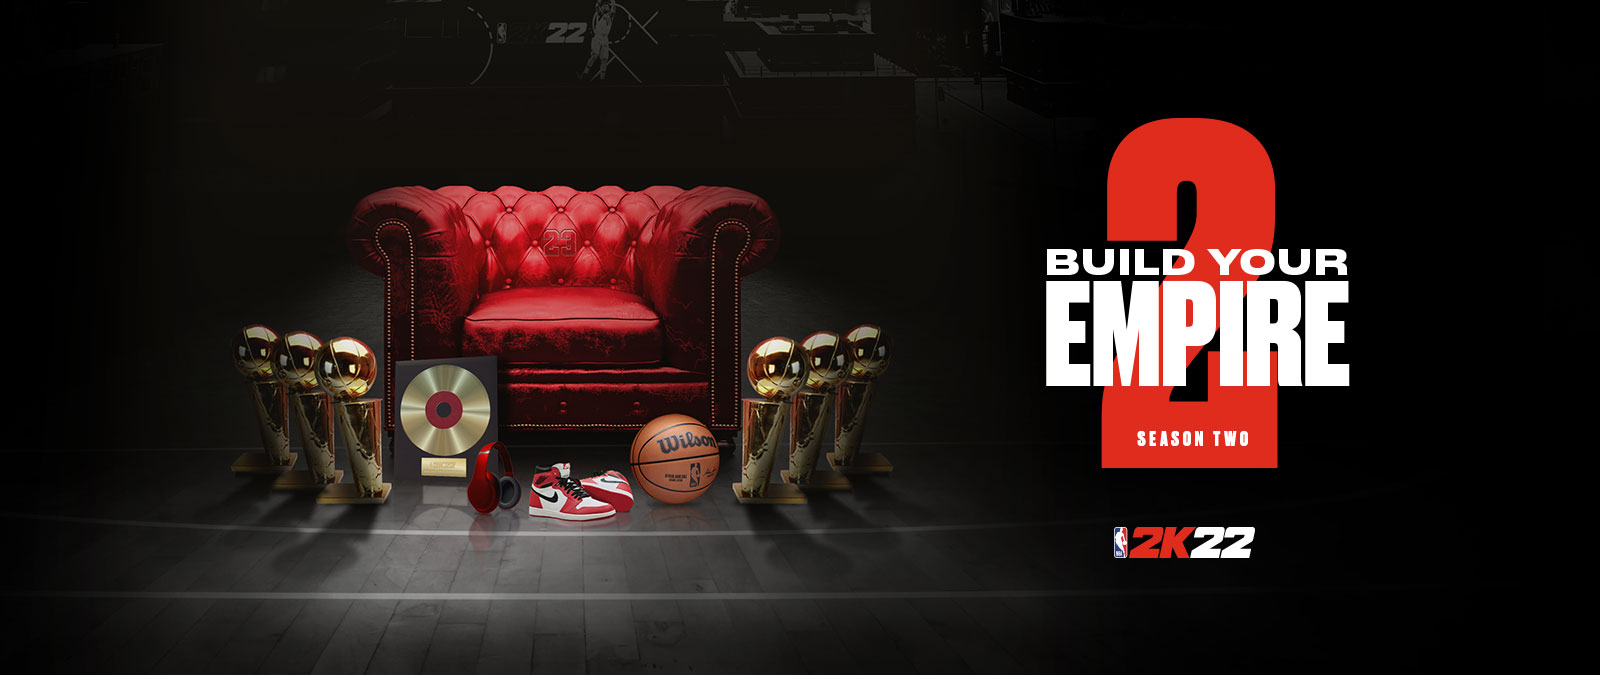 Постройте свою империю во втором сезоне NBA 2k22: несколько трофеев расположены по обе стороны от красного кожаного стула.